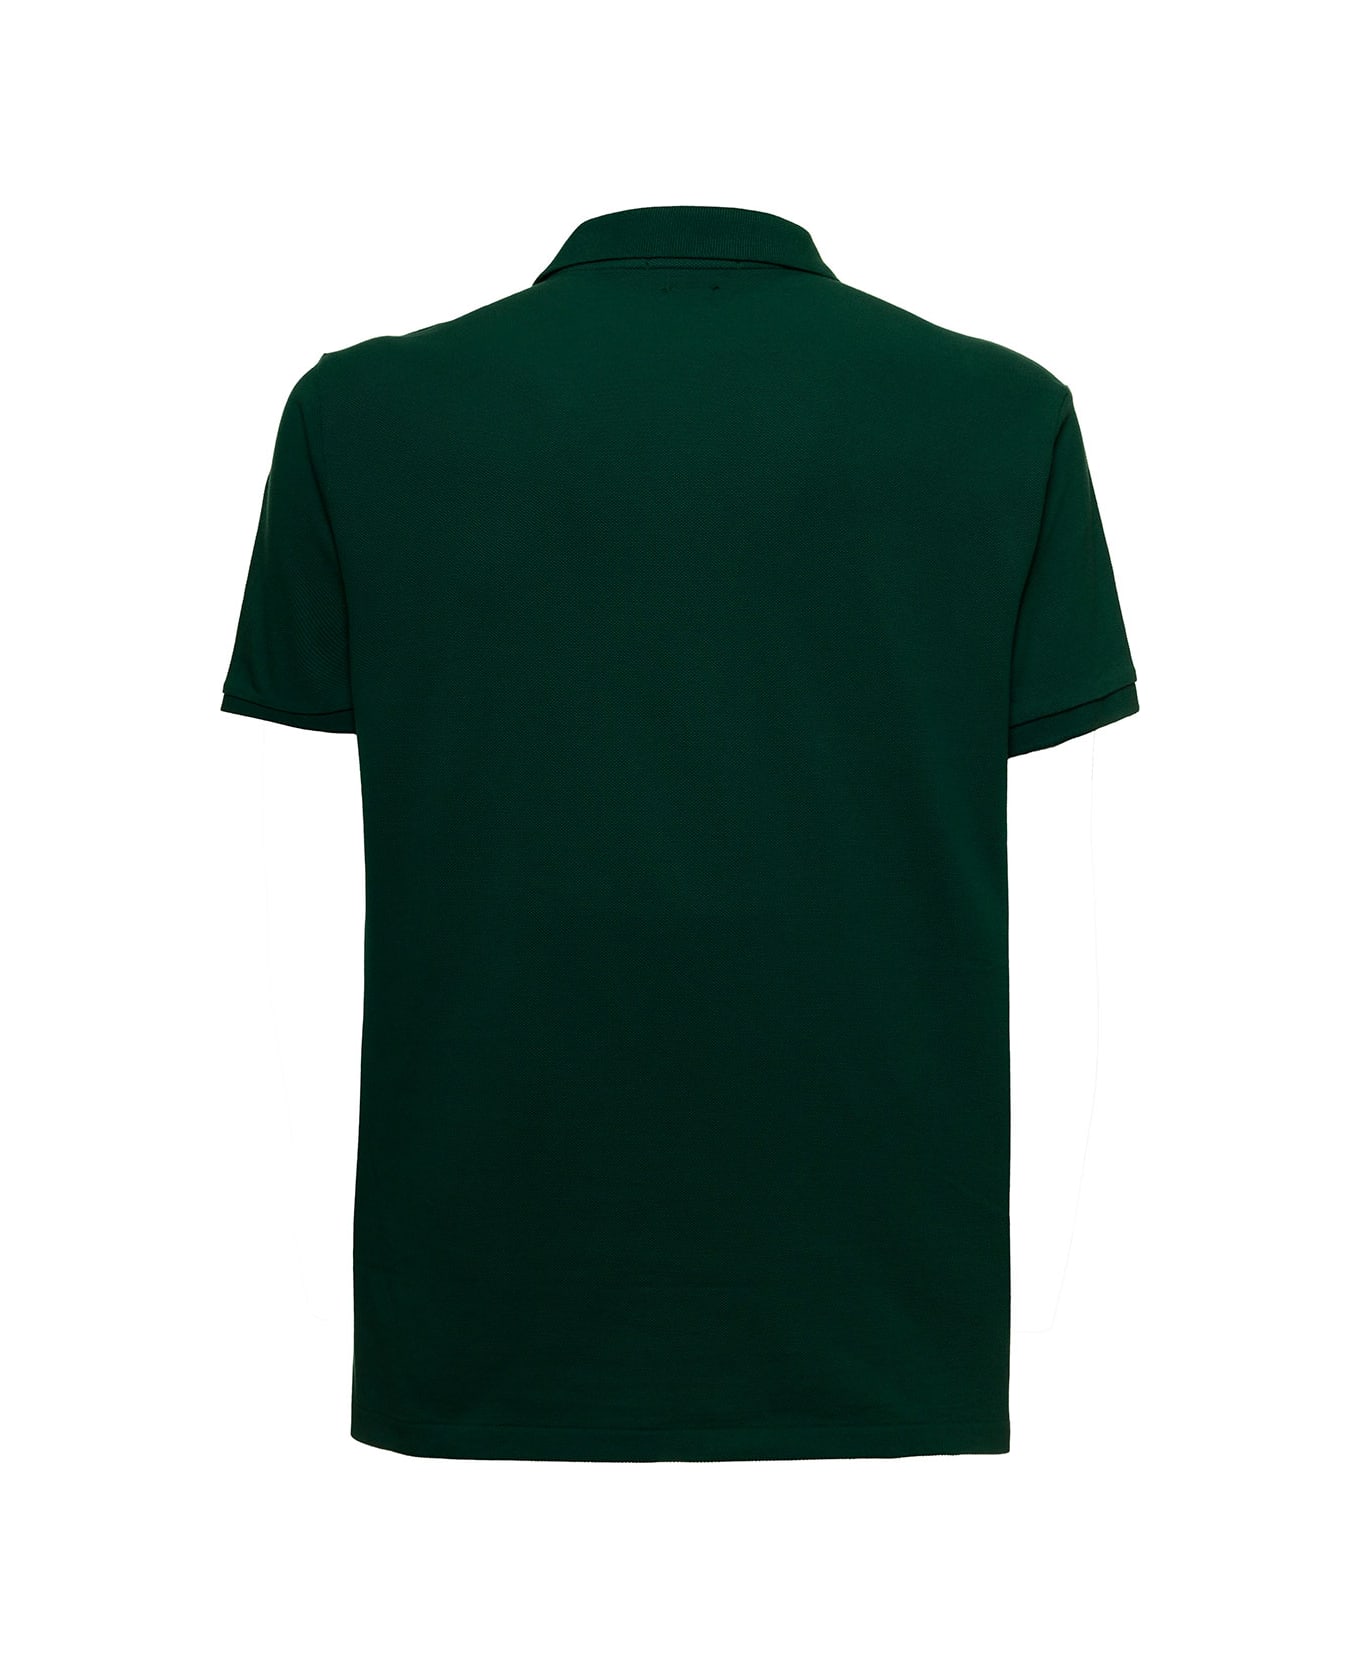 Ralph Lauren Green Cotton Piquet Polo Shirt With Logo - New Forest